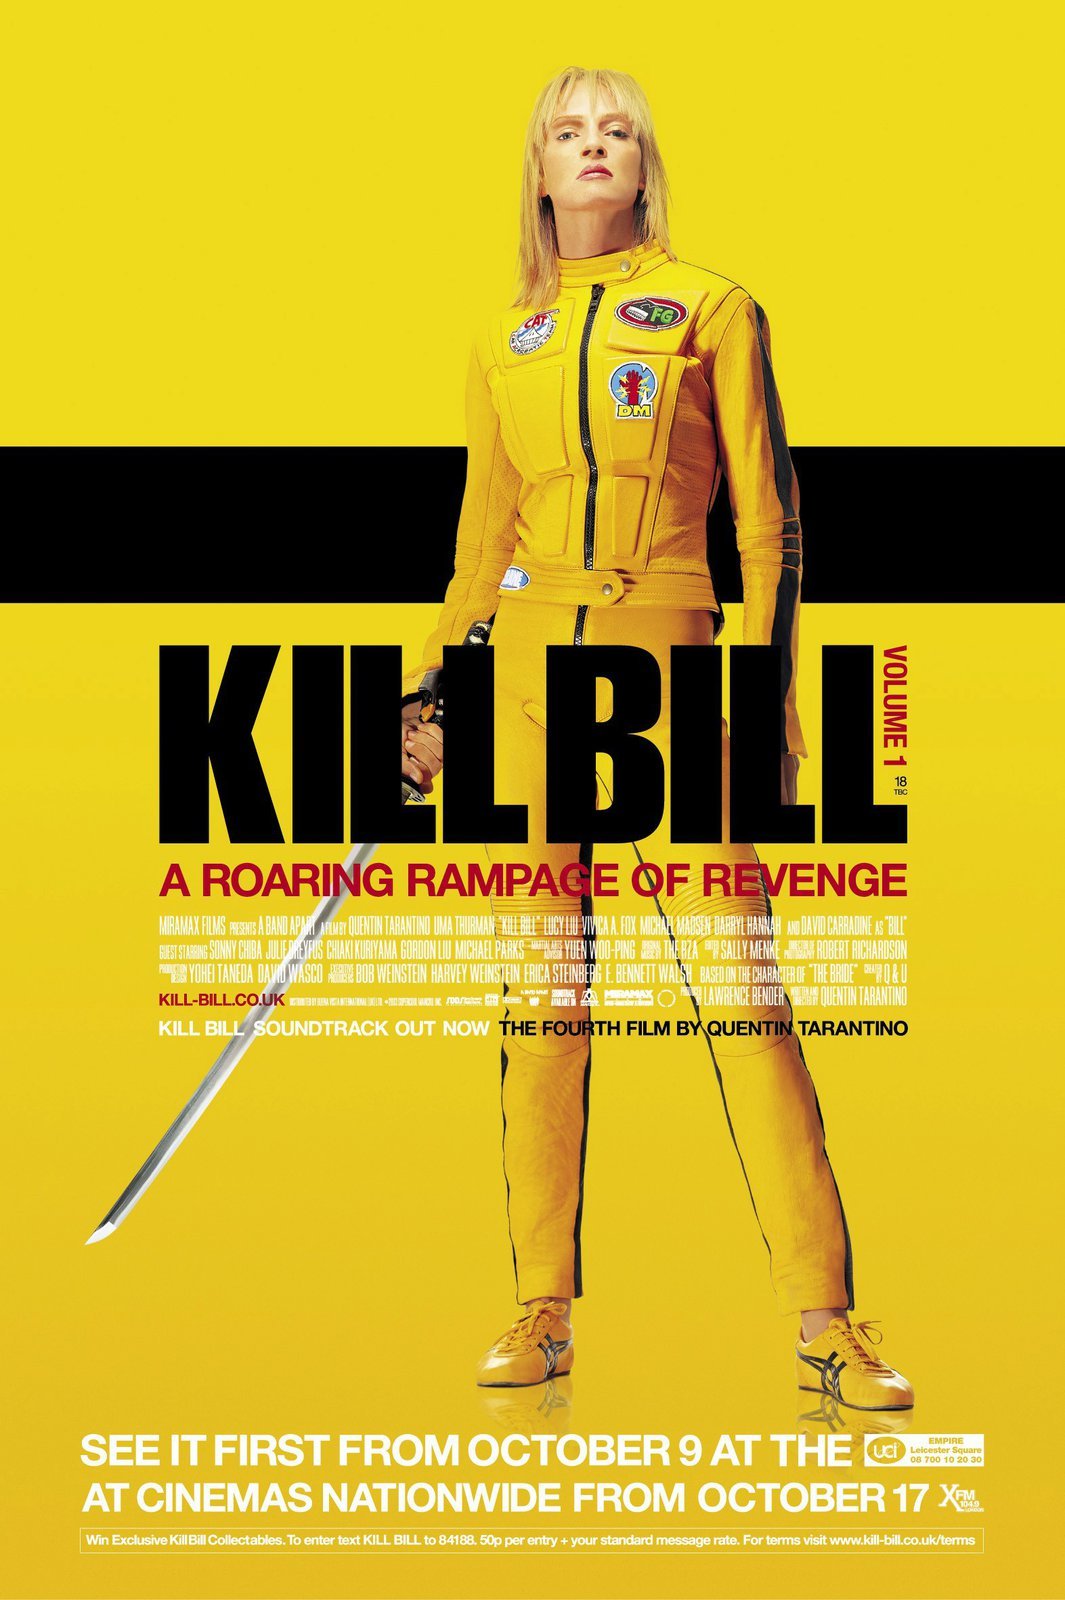 Kill Bill 2003 - ORIGINÁL: Uma Thurman (46).